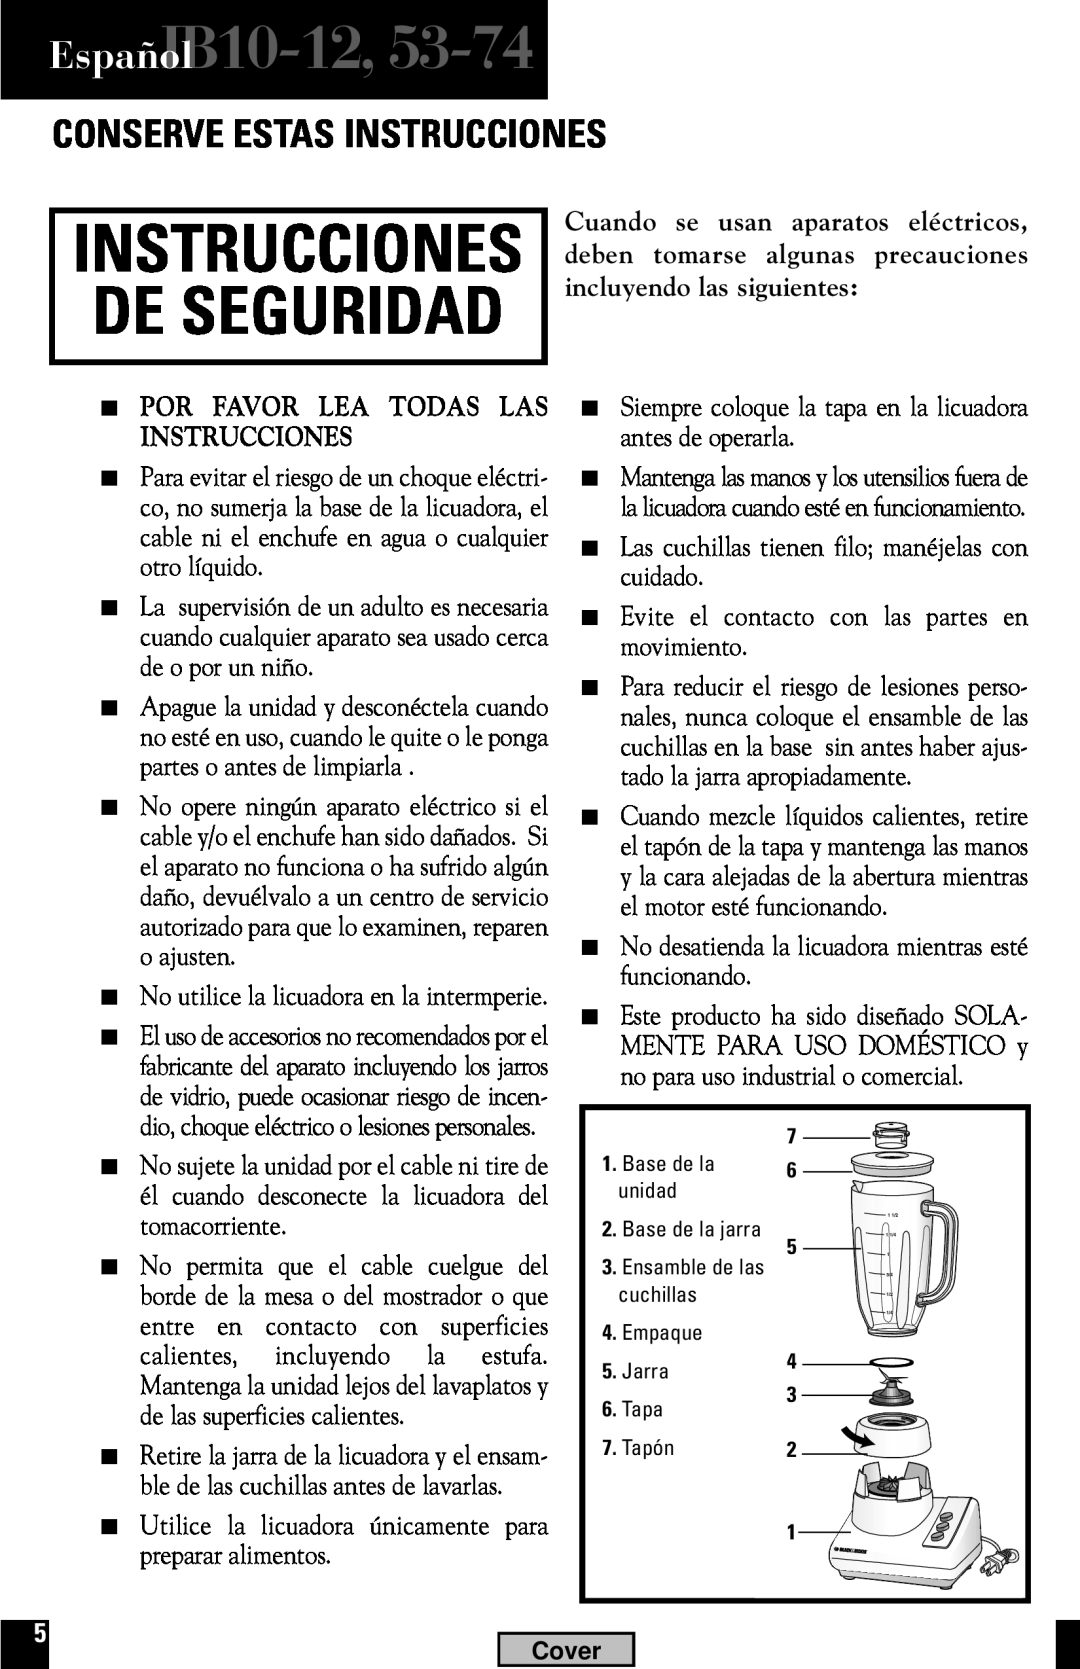 Black & Decker EspañolIB10-12, Conserve Estas Instrucciones, Cuando se usan aparatos eléctricos, deben tomarse 